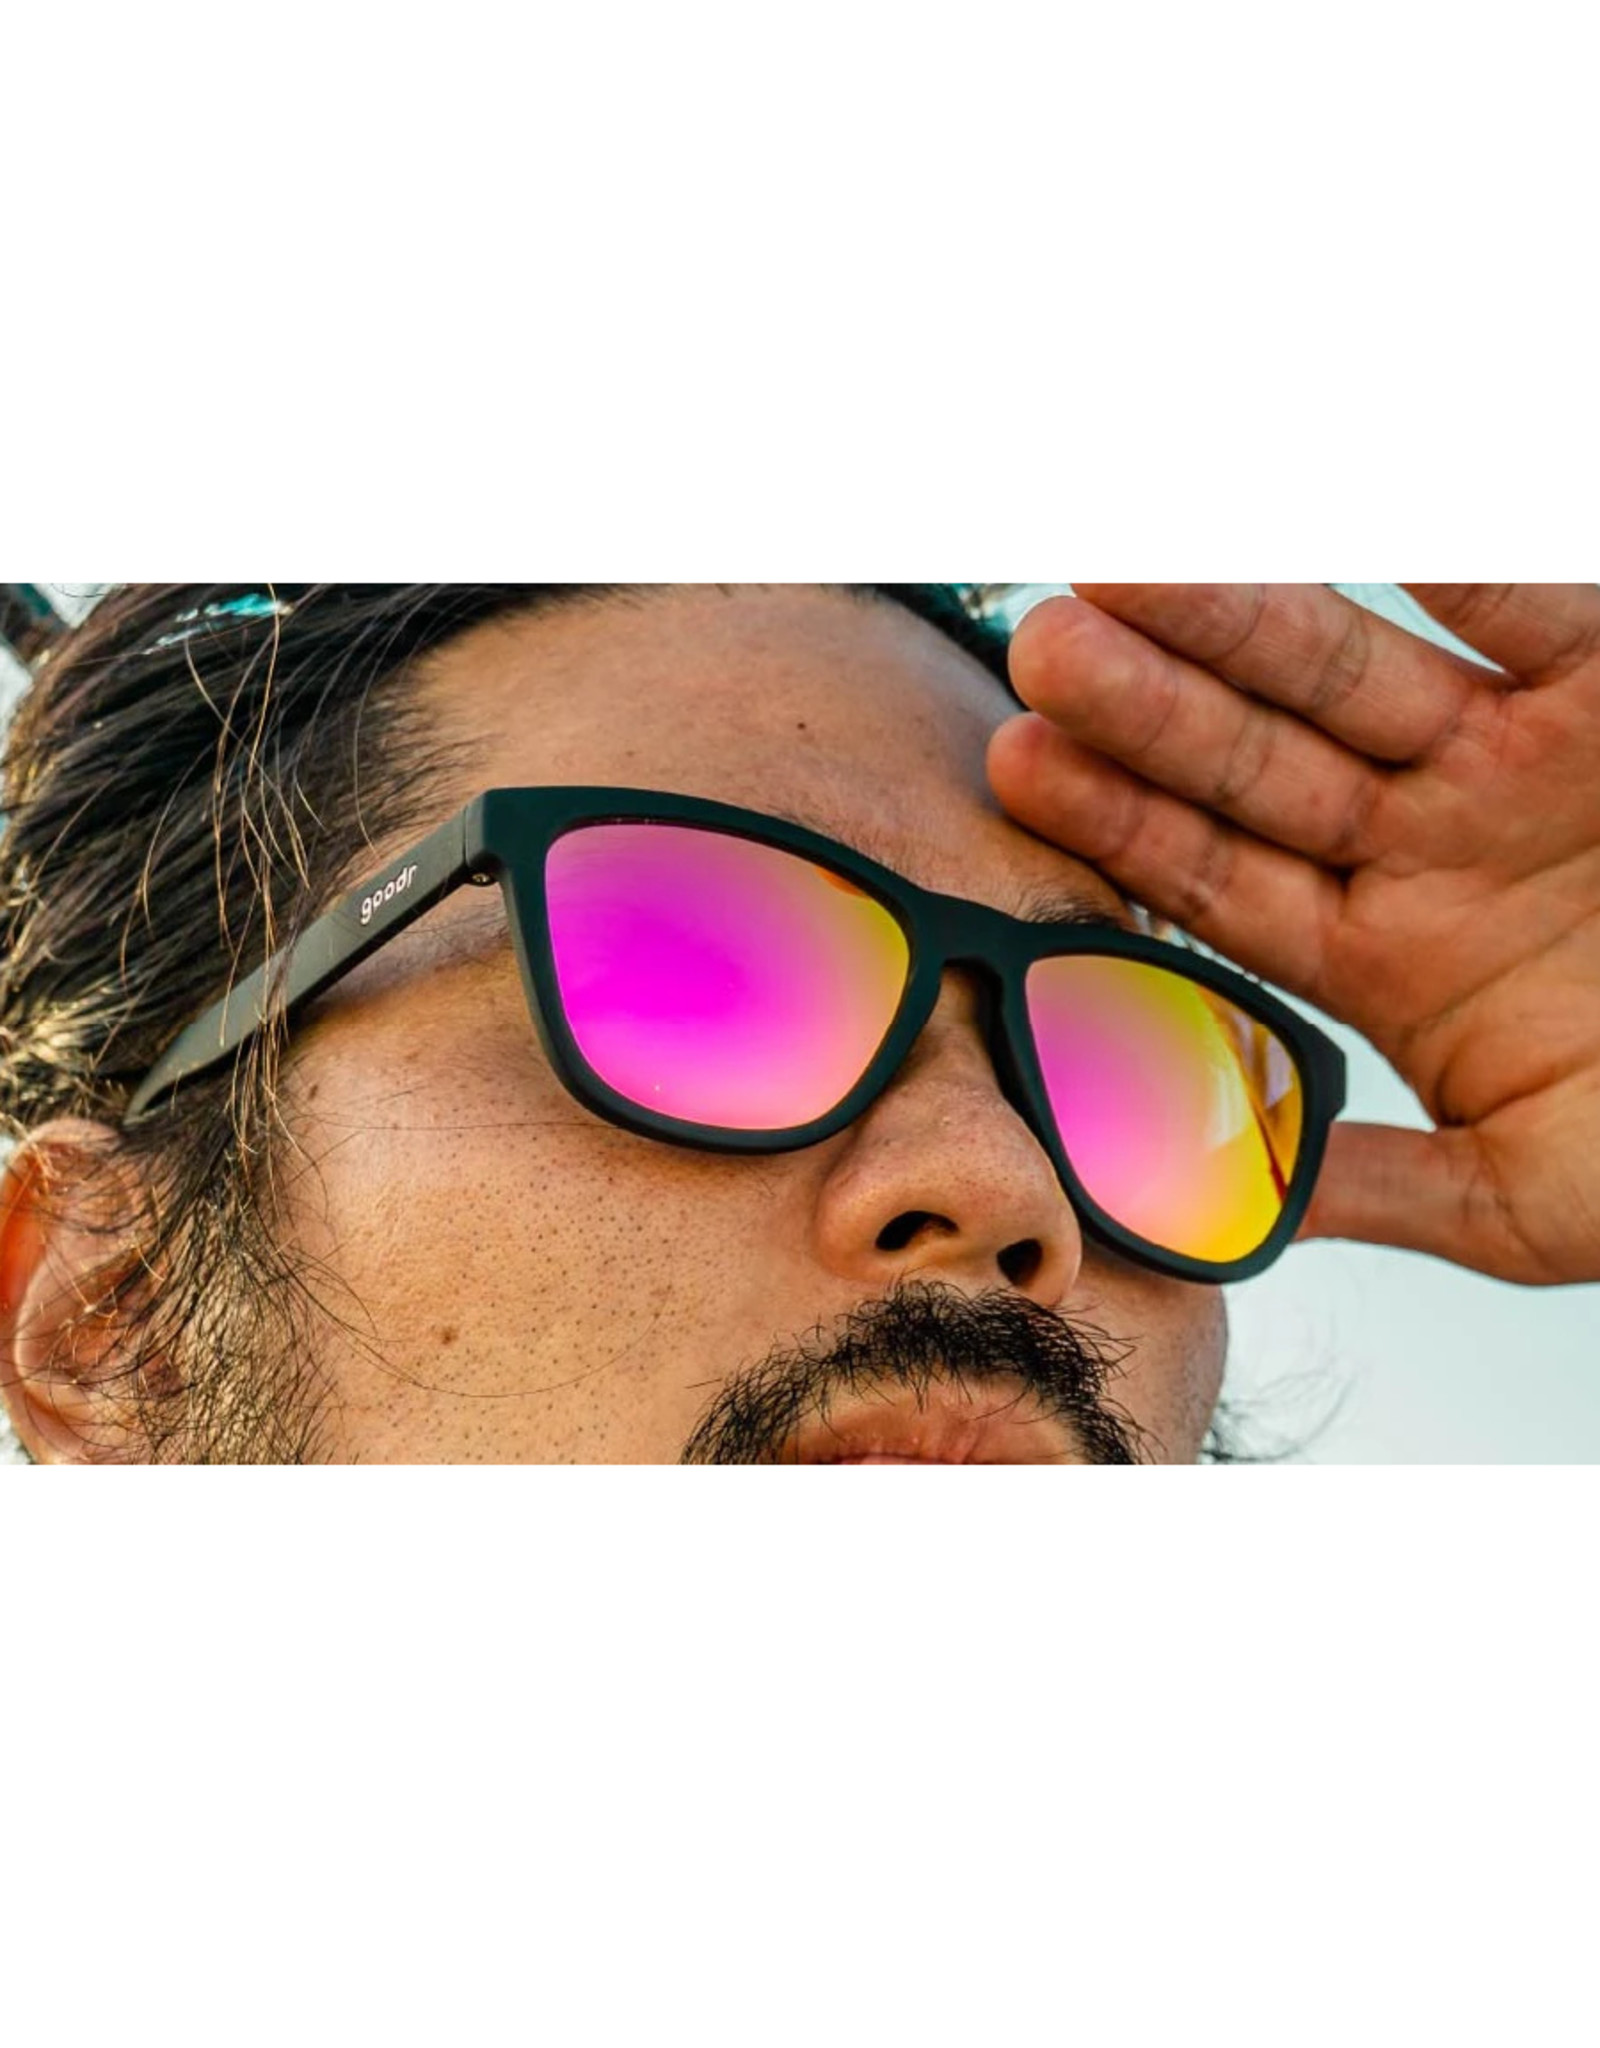 goodr goodr OG Gaming Sunglasses - Professional Respawner